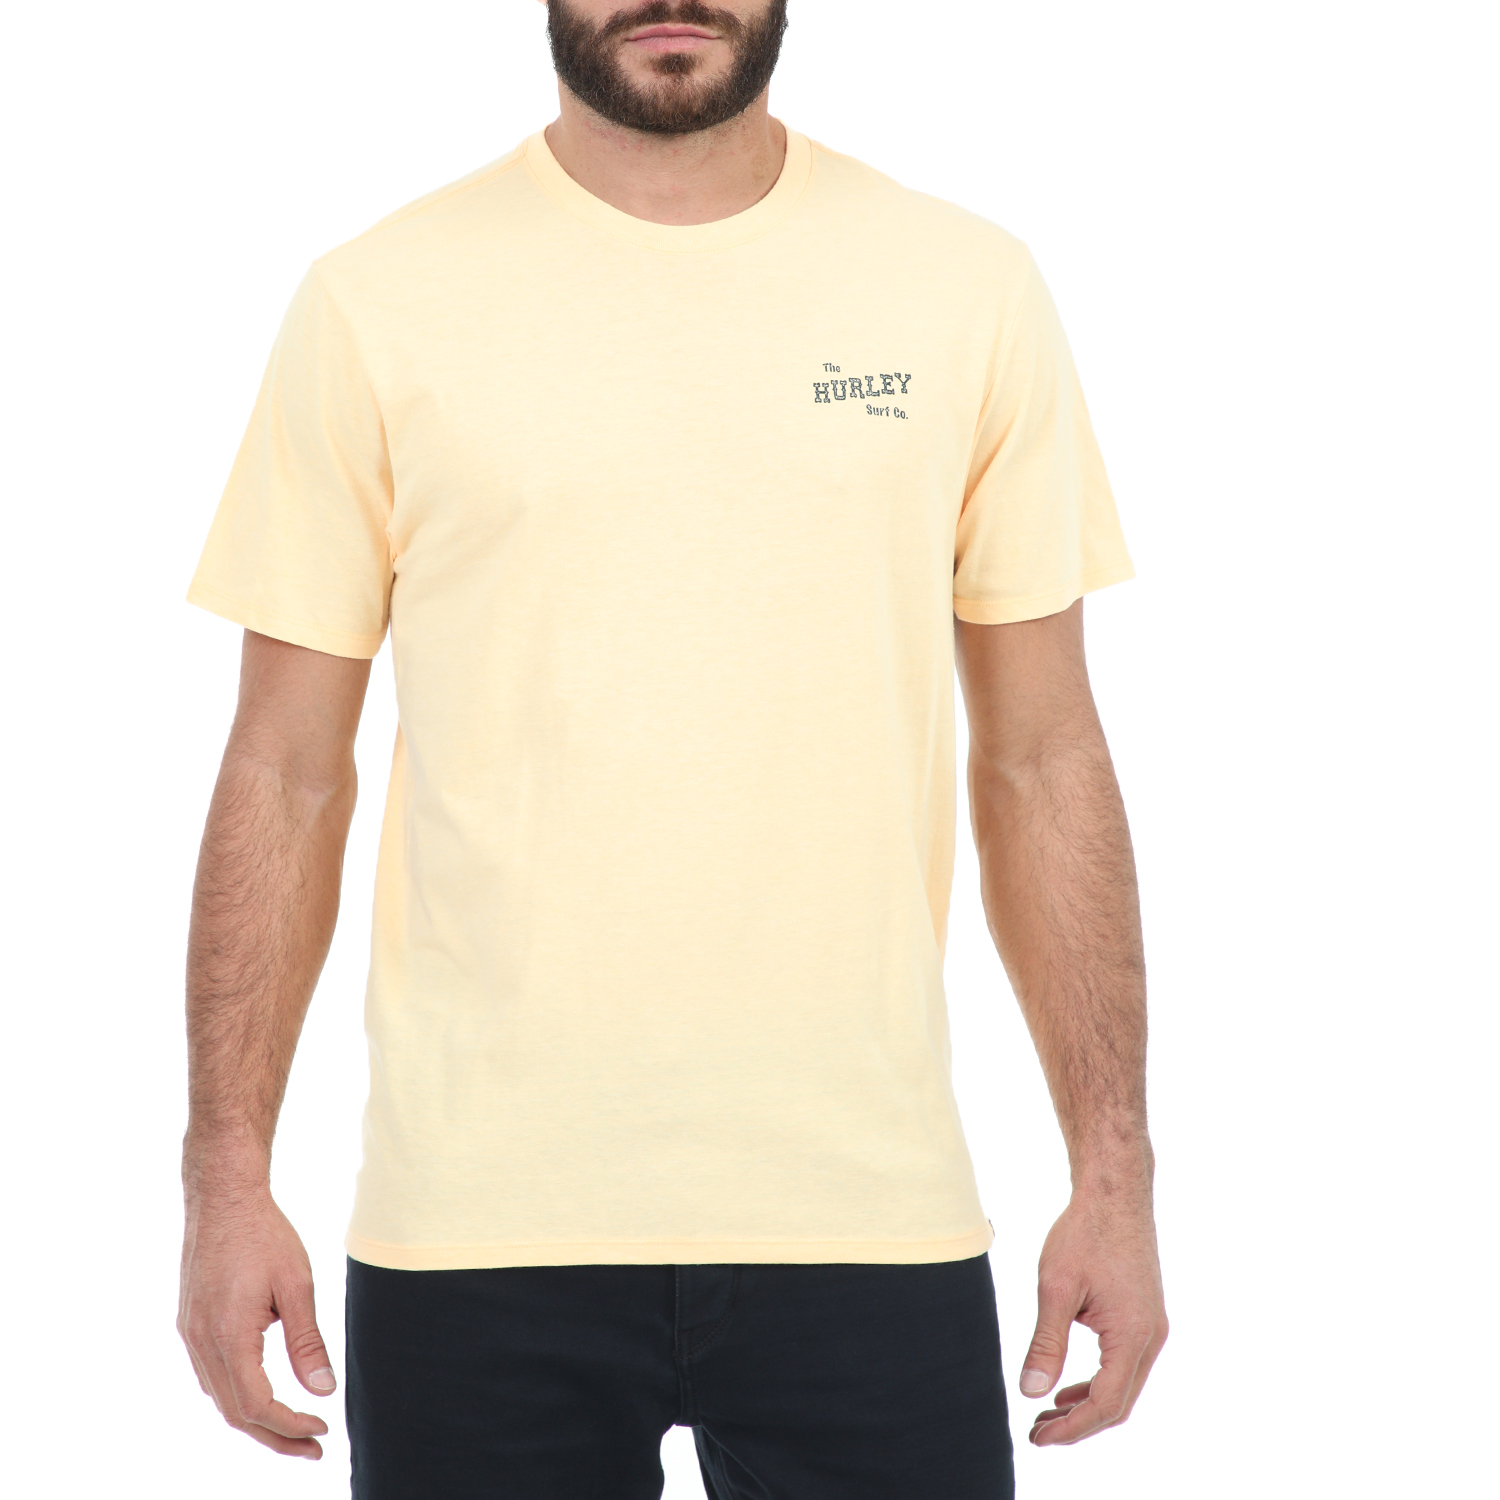 Ανδρικά/Ρούχα/Μπλούζες/Κοντομάνικες HURLEY - Ανδρικό t-shirt HURLEY M SLIPPIN κίτρινο